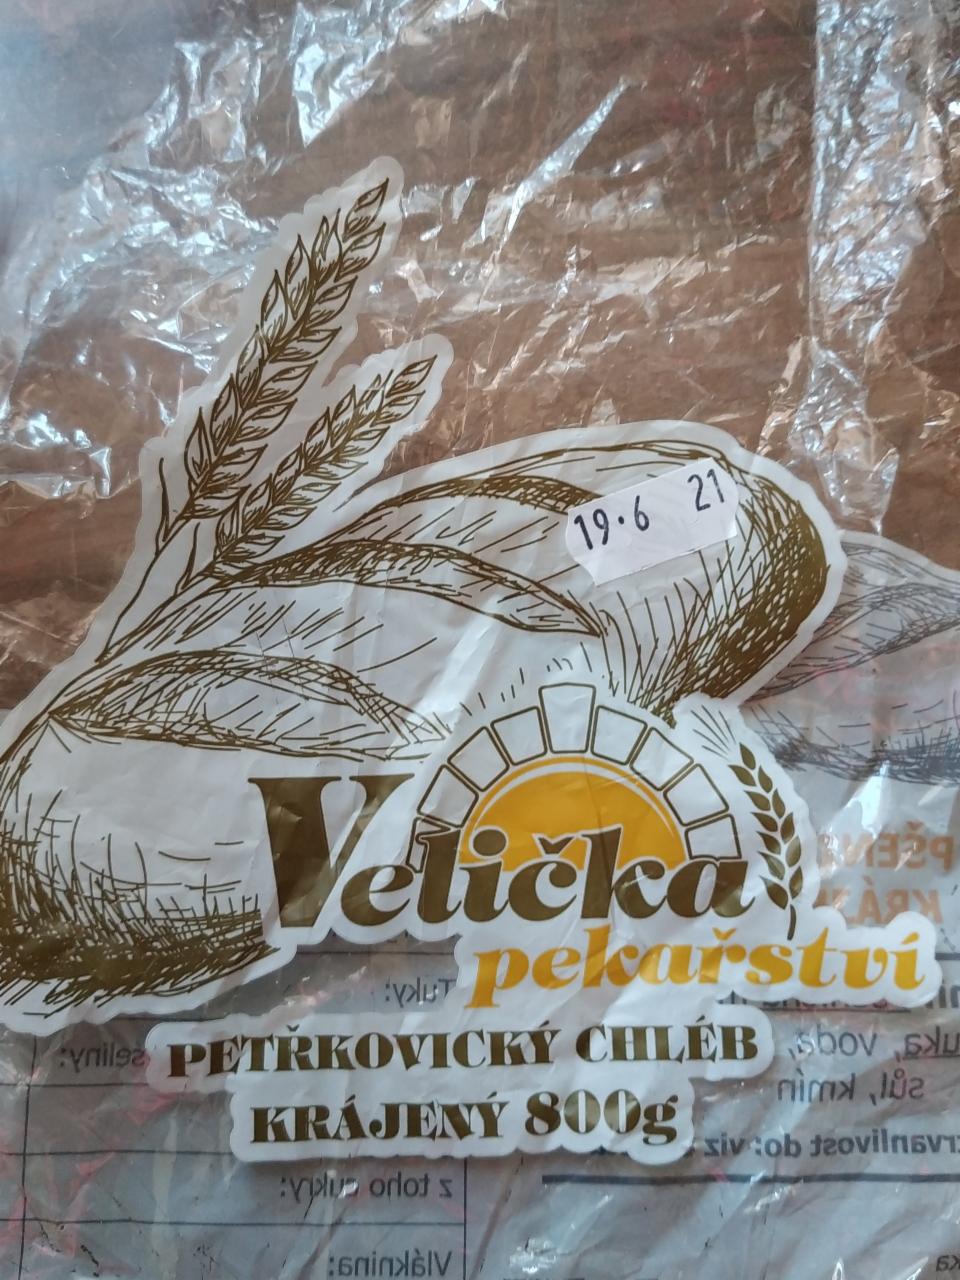 Fotografie - Petřkovický chléb pšenično-žitný Velička pekařství